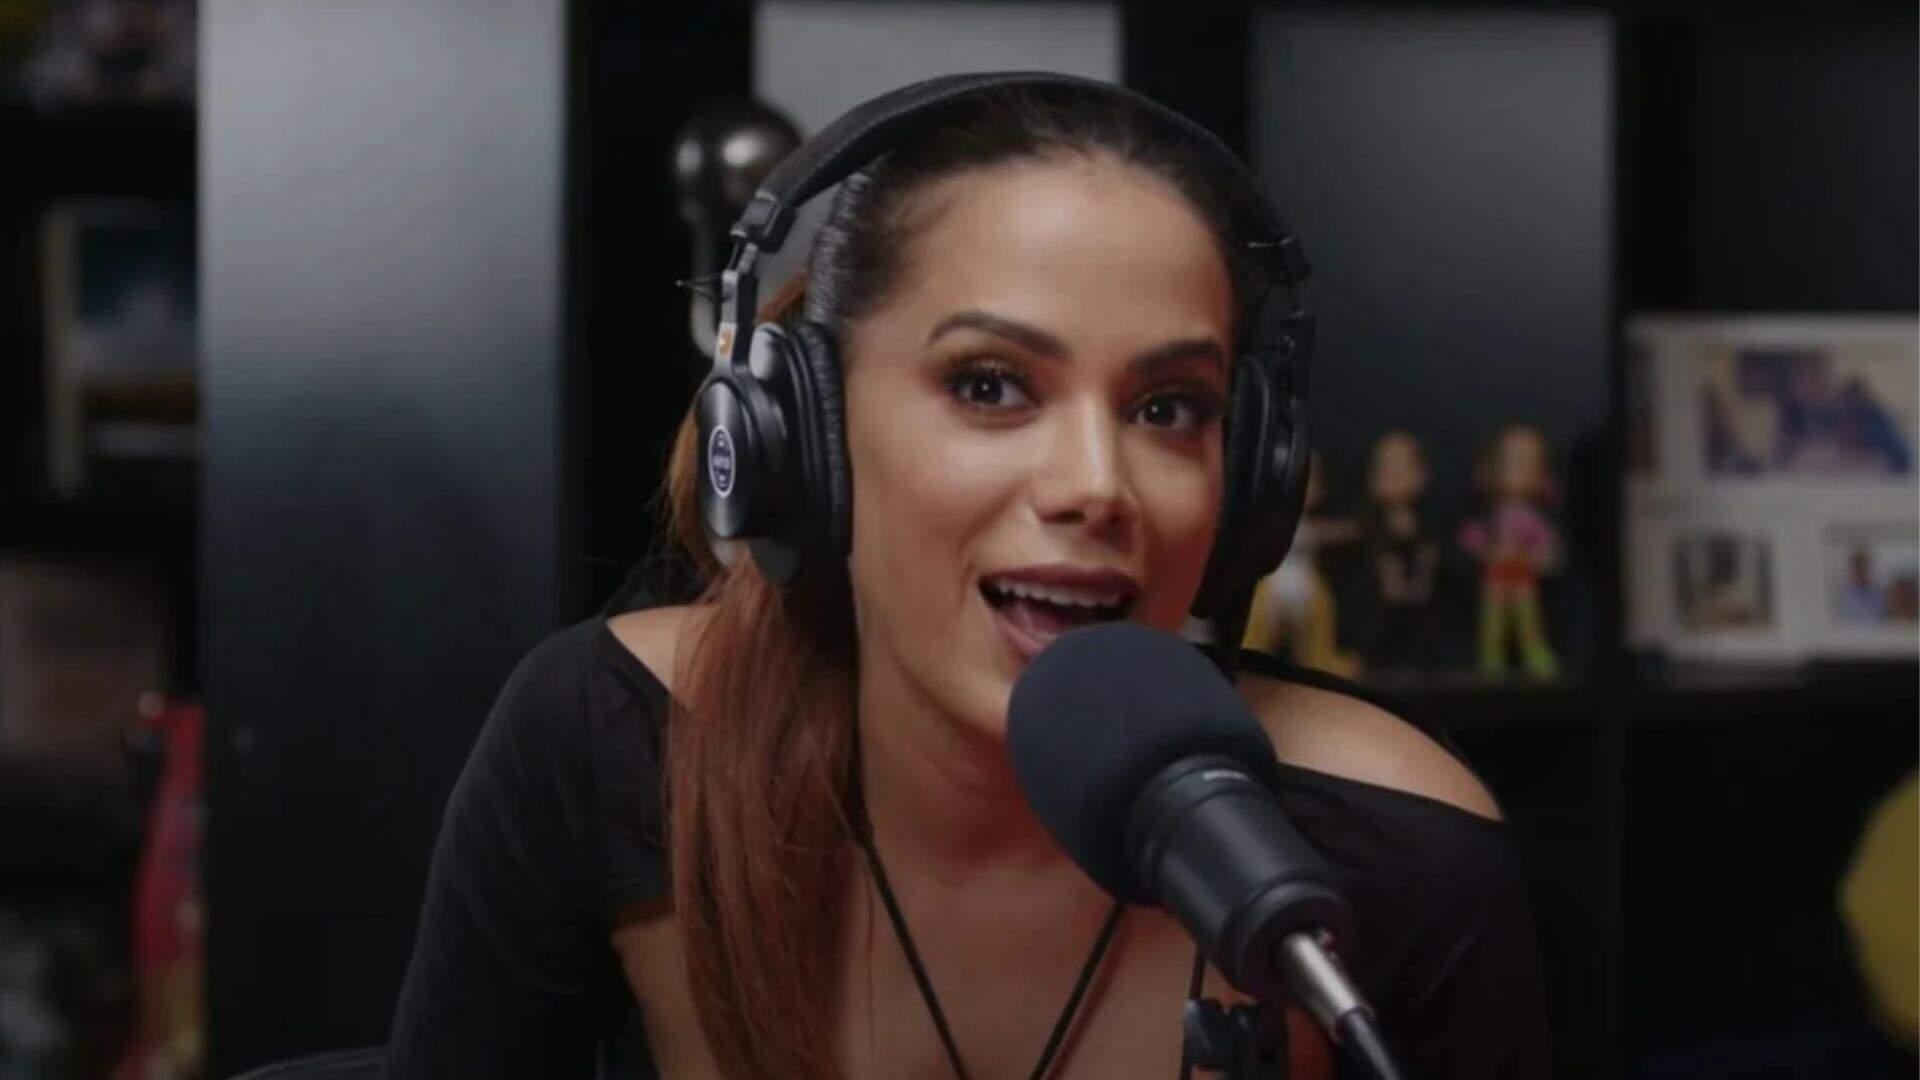 Anitta dá pista sobre participação no BBB 23: “Se deixar” - Metropolitana FM